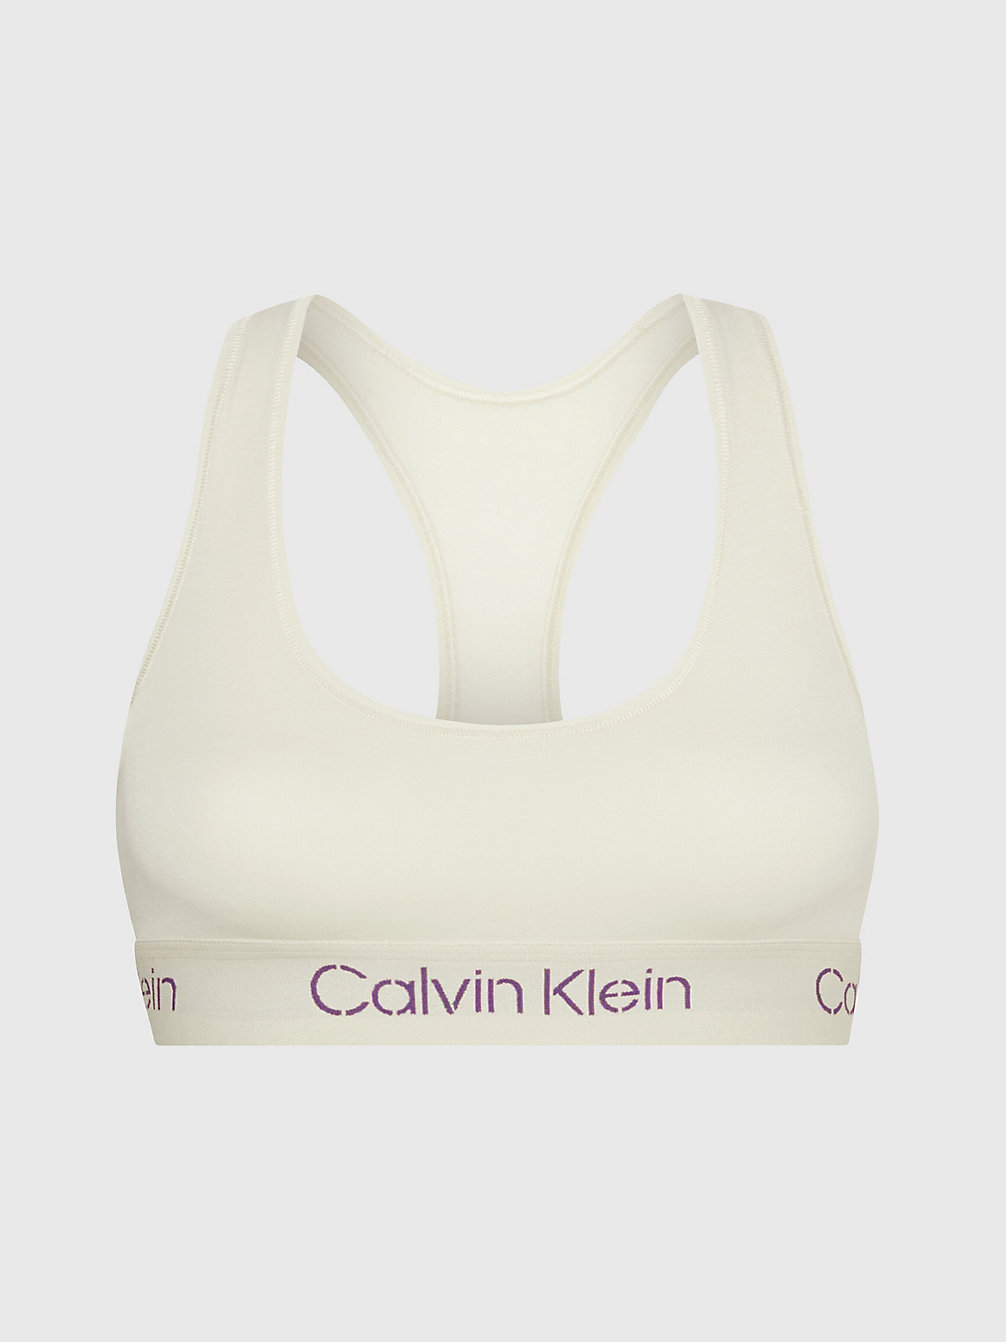 BONE WHITE/SUNSET PURPLE LOGO Bralette - Modern Cotton undefined Damen Calvin Klein